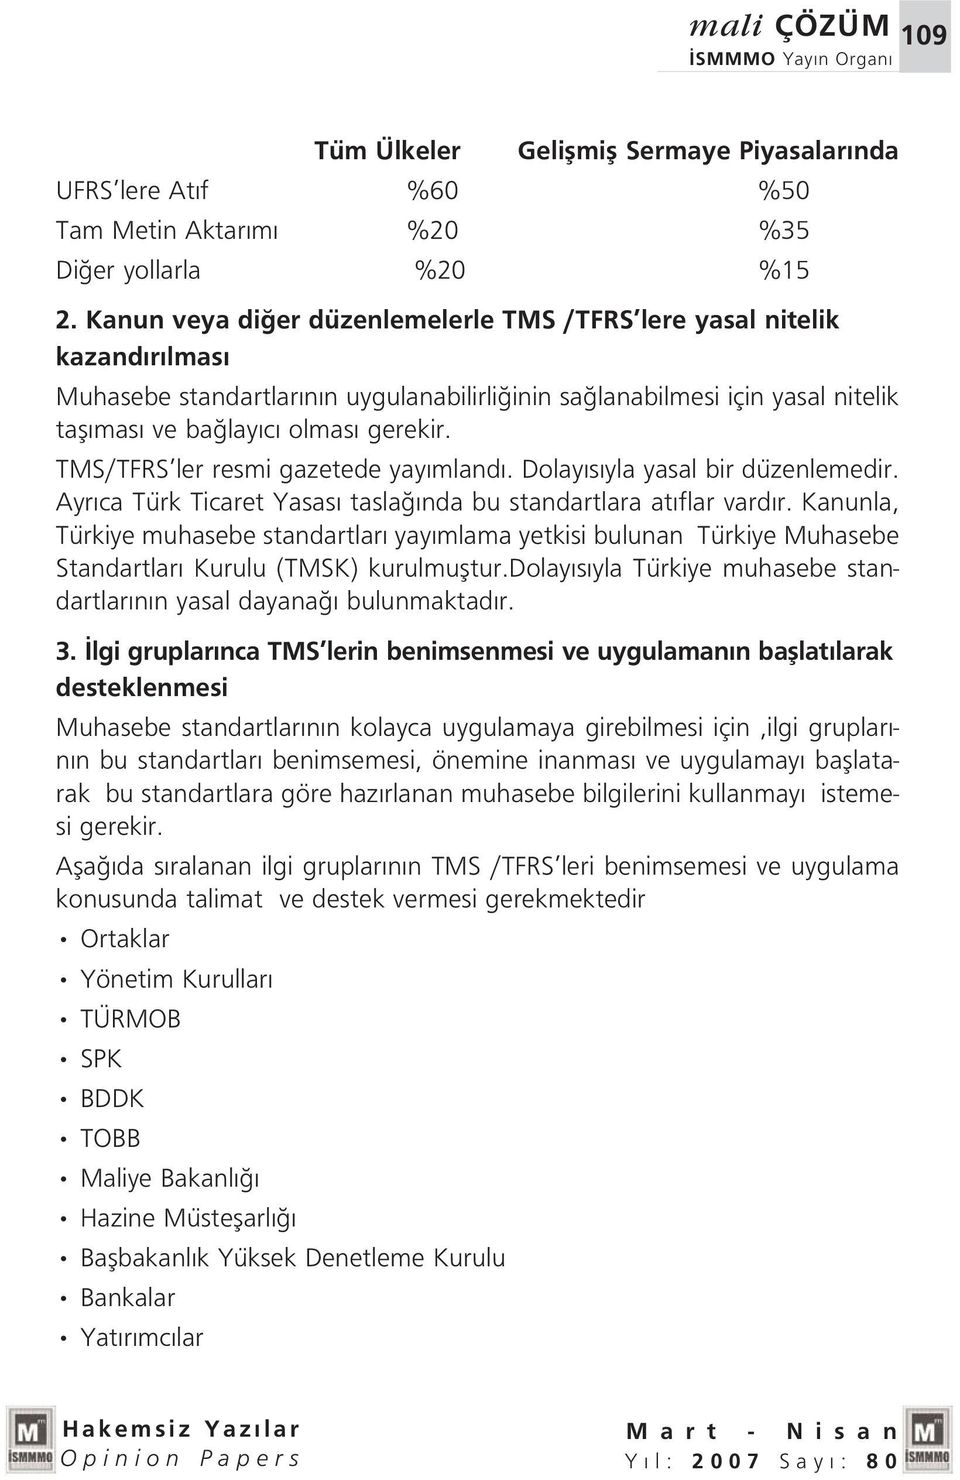 TMS/TFRS ler resmi gazetede yay mland. Dolay s yla yasal bir düzenlemedir. Ayr ca Türk Ticaret Yasas tasla nda bu standartlara at flar vard r.